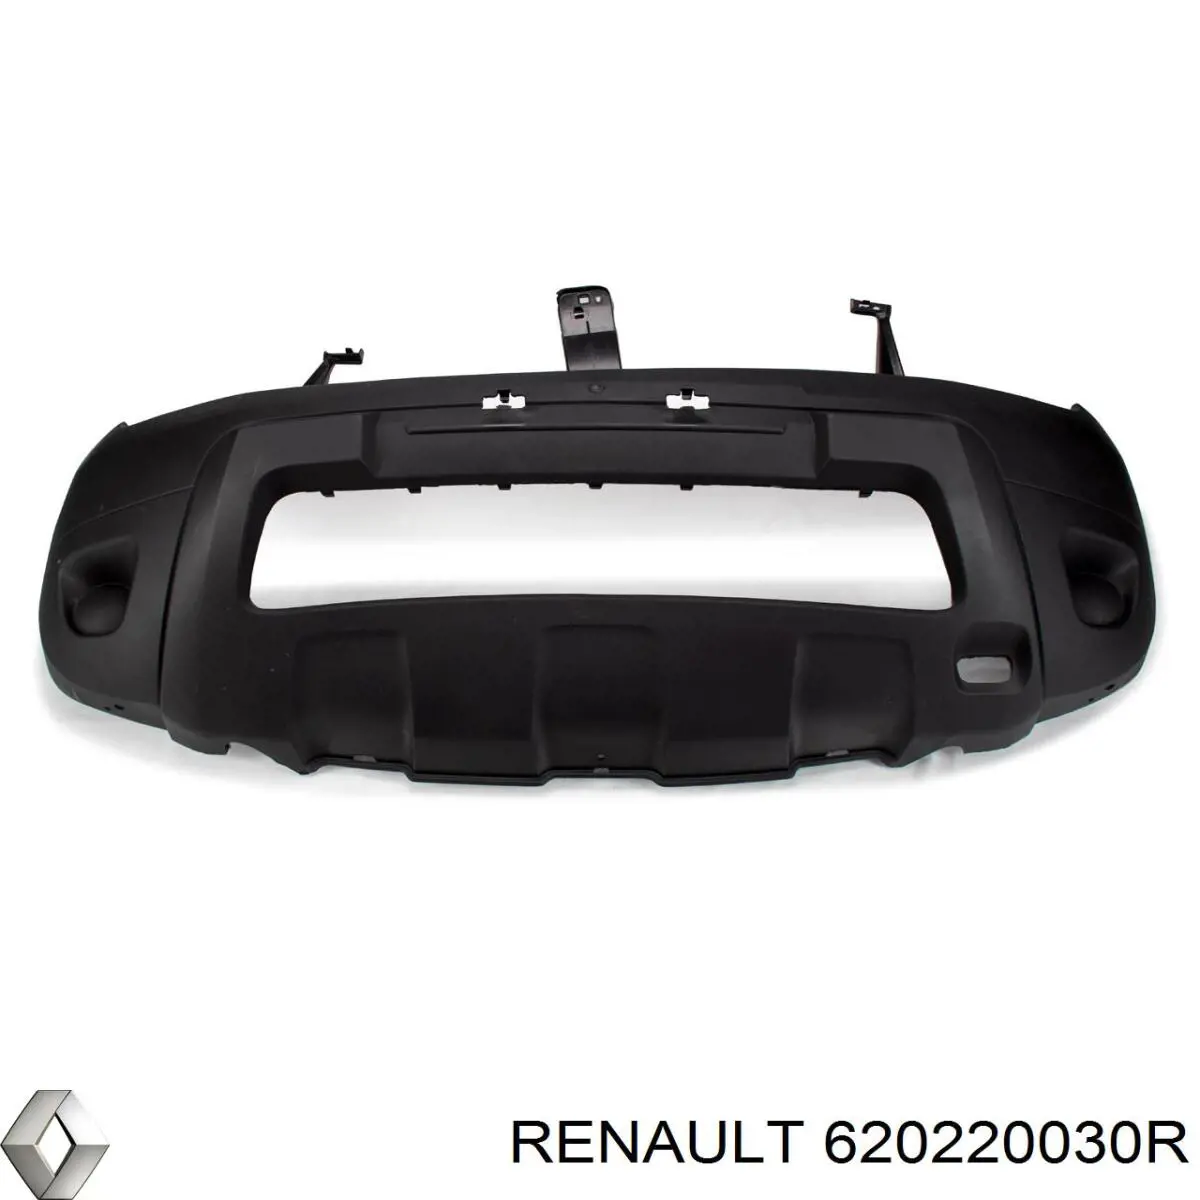 620220030R Renault (RVI) parachoques delantero